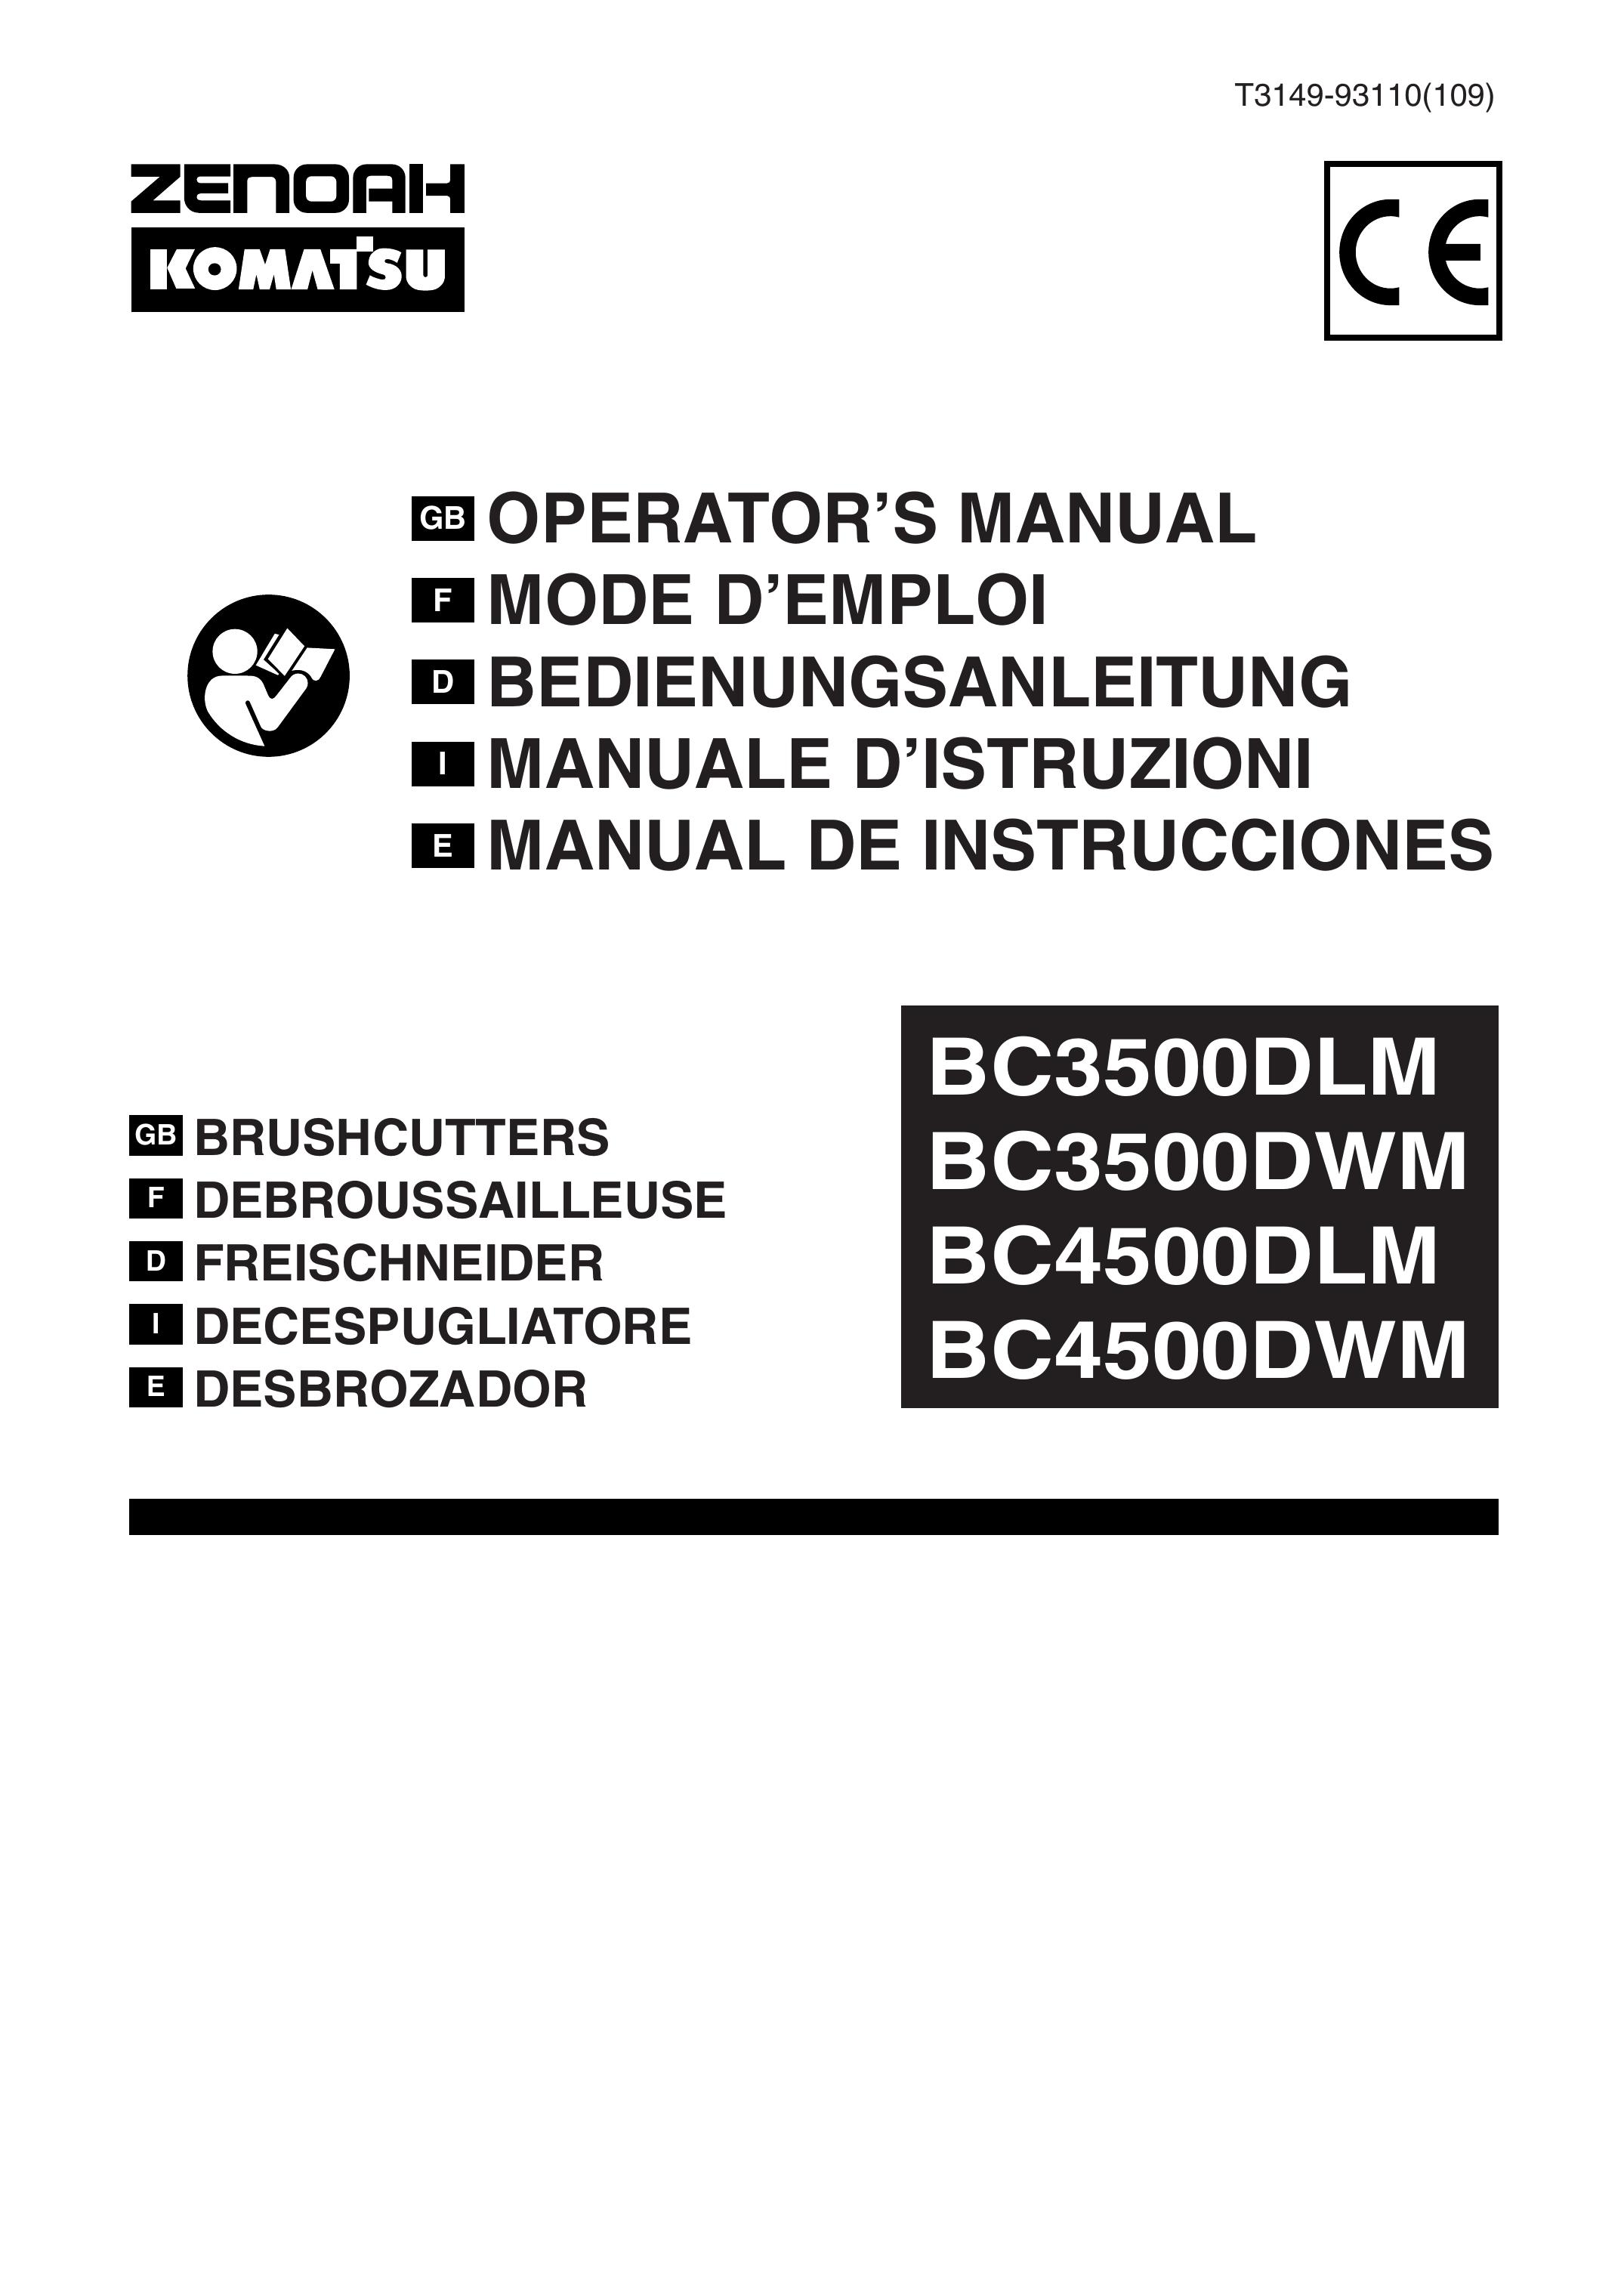 Zenoah BC3500DWM Brush Cutter User Manual